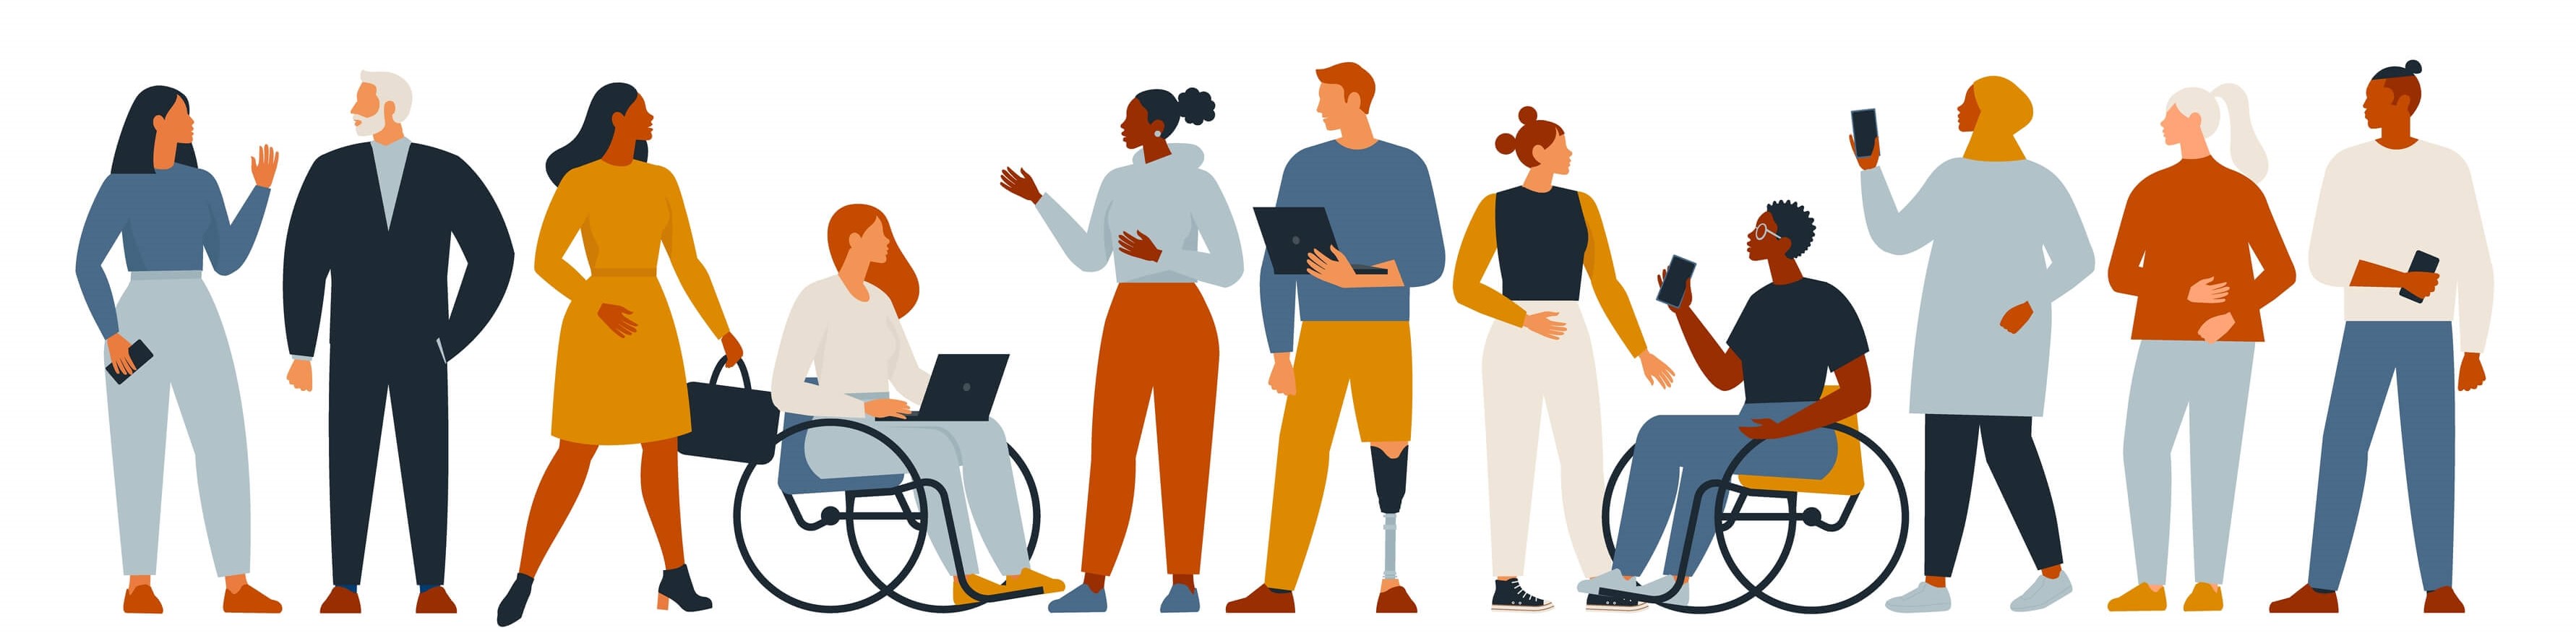 Eine Illustration von 11 Personen, die miteinander kommunizieren. Zwei Personen nutzen einen Rollstuhl. Eine Person nutzt eine Beinprothese. Eine Person gebärdet.